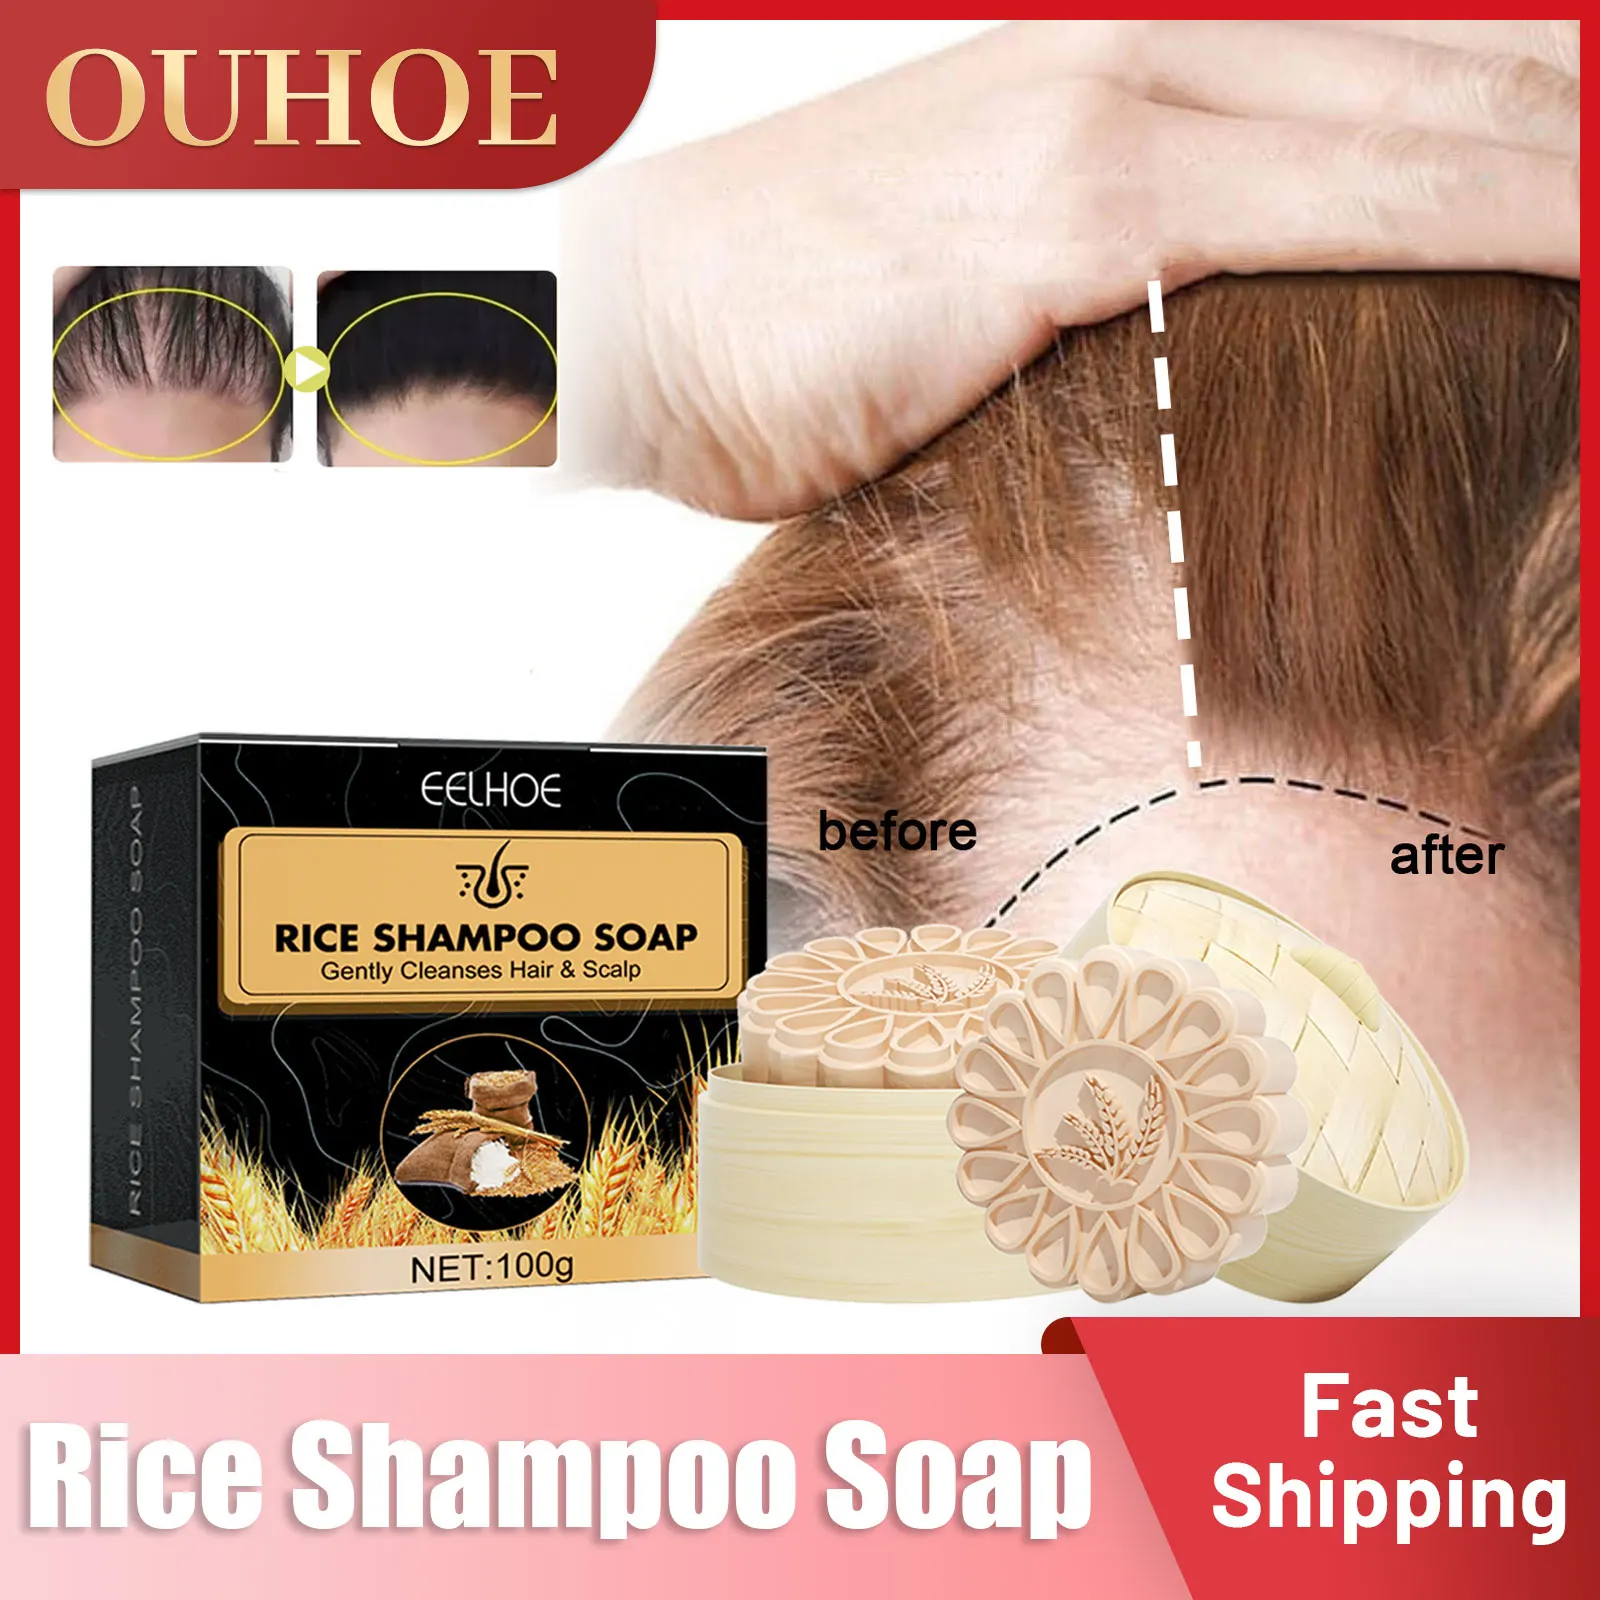 אורז נגד אובדן שמפו סבון להזין שיפור התקרחות לצמיחה מחודשת שיער הסרת קשקשים לחות השיער שמפו טיפולי - 0